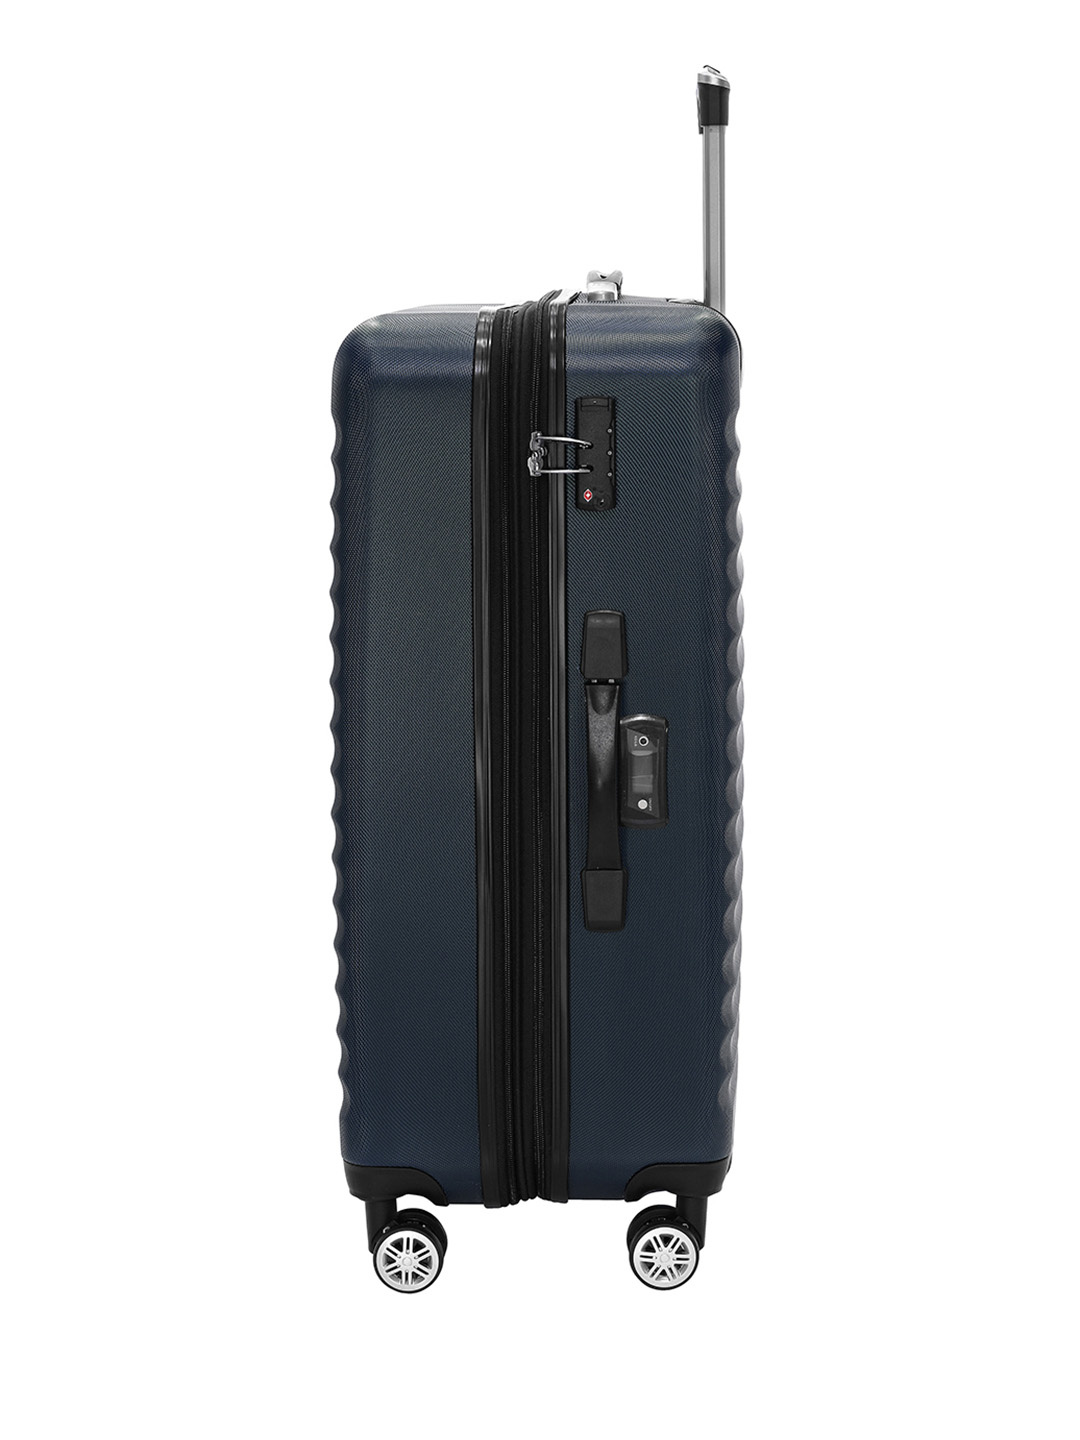 Фото Большой чемодан на колесах из ABS пластика темно-синего цвета Чемоданы